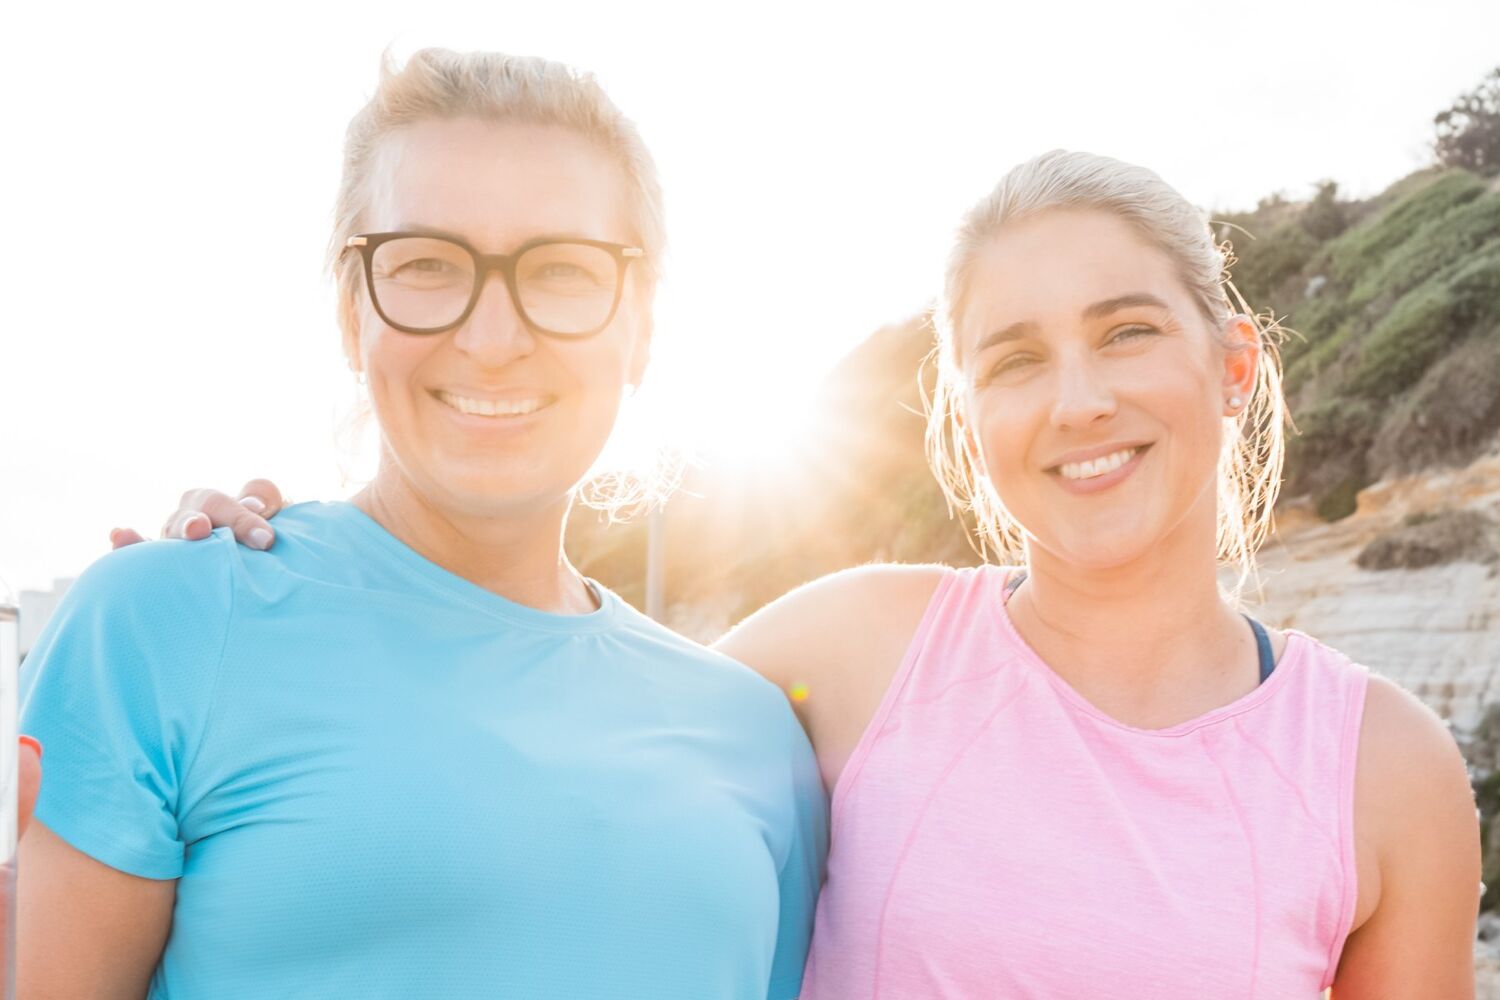 Two women in running gear sunrise background